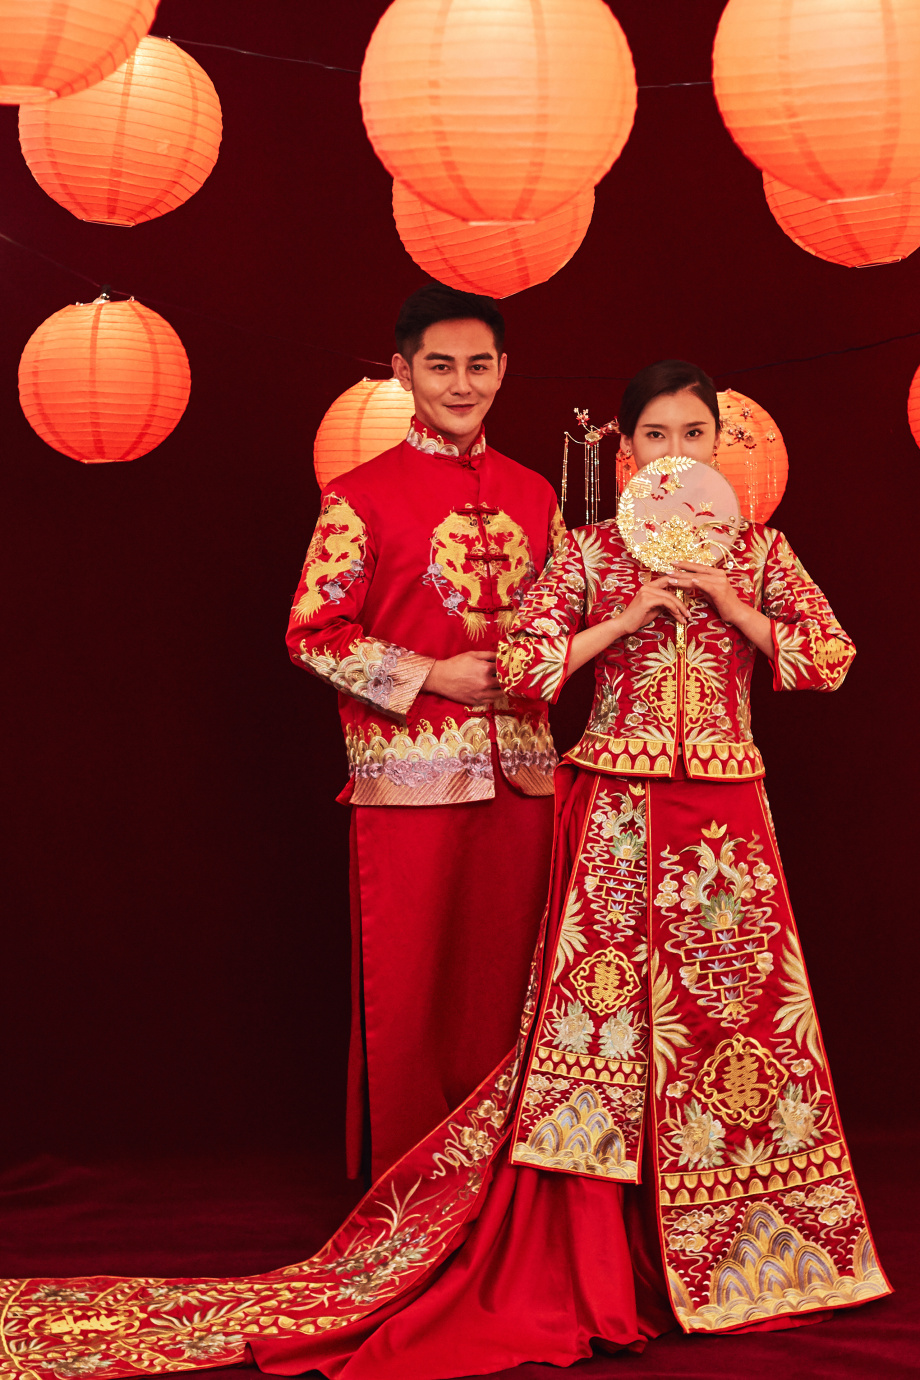 Thưởng thức những hình ảnh mang phong cách chụp ảnh cưới của Trung Quốc! Bạn sẽ được khám phá những cảnh đẹp tự nhiên và kiến trúc truyền thống của đất nước này. Đồng thời, chúng tôi cũng sẽ giúp bạn thu được những tấm hình đầy ý nghĩa với một concept phong cách Trung Quốc độc đáo.